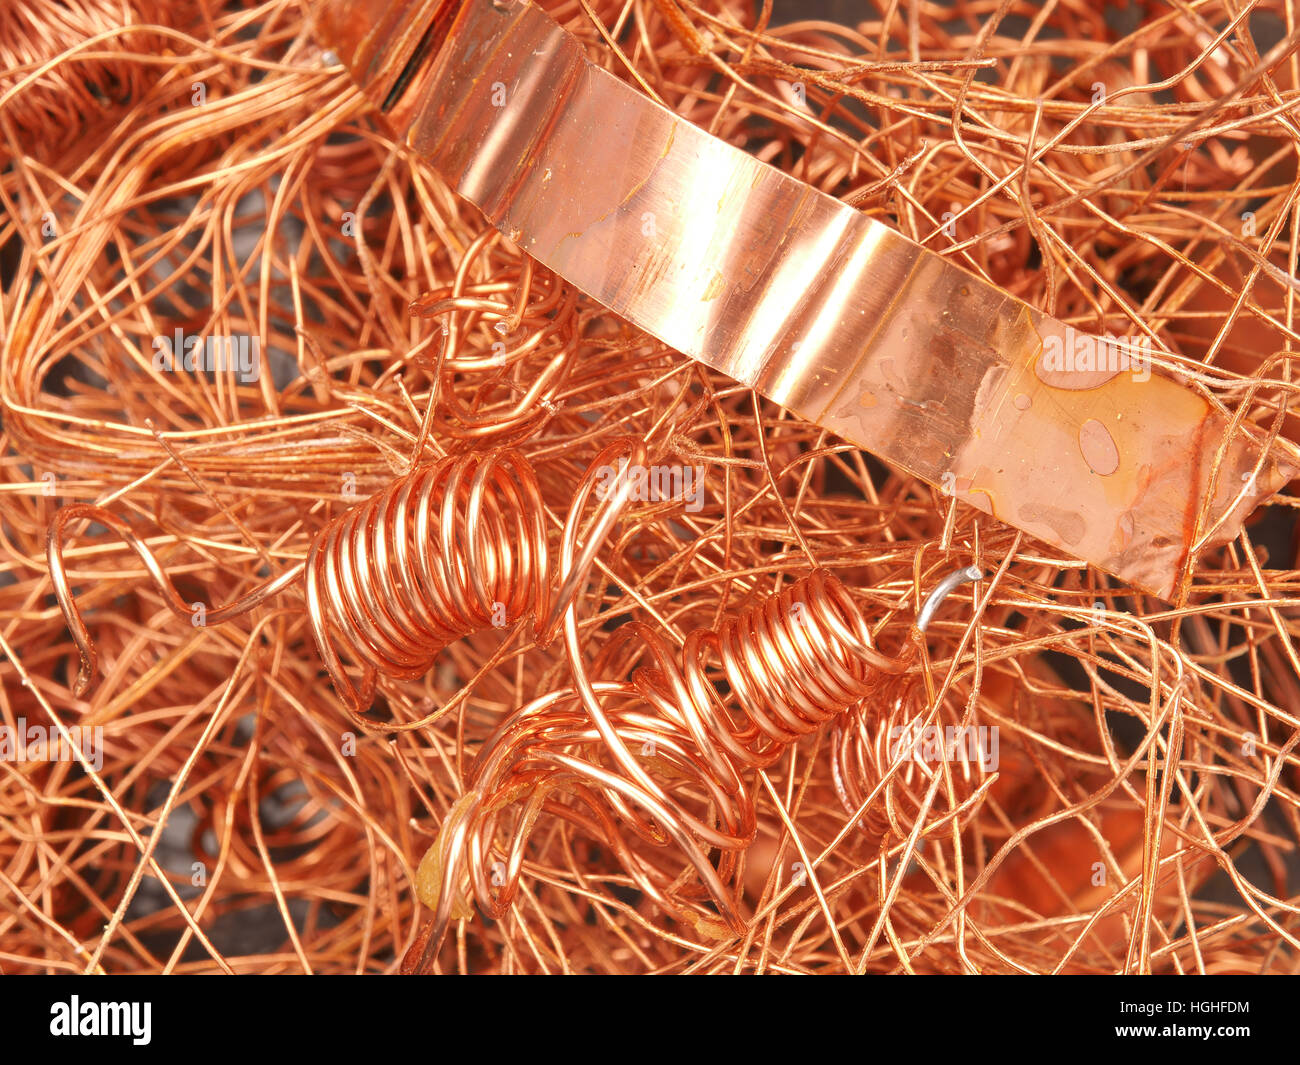 Textura de fondo de cobre, imagen concepto de recuperación Foto de stock